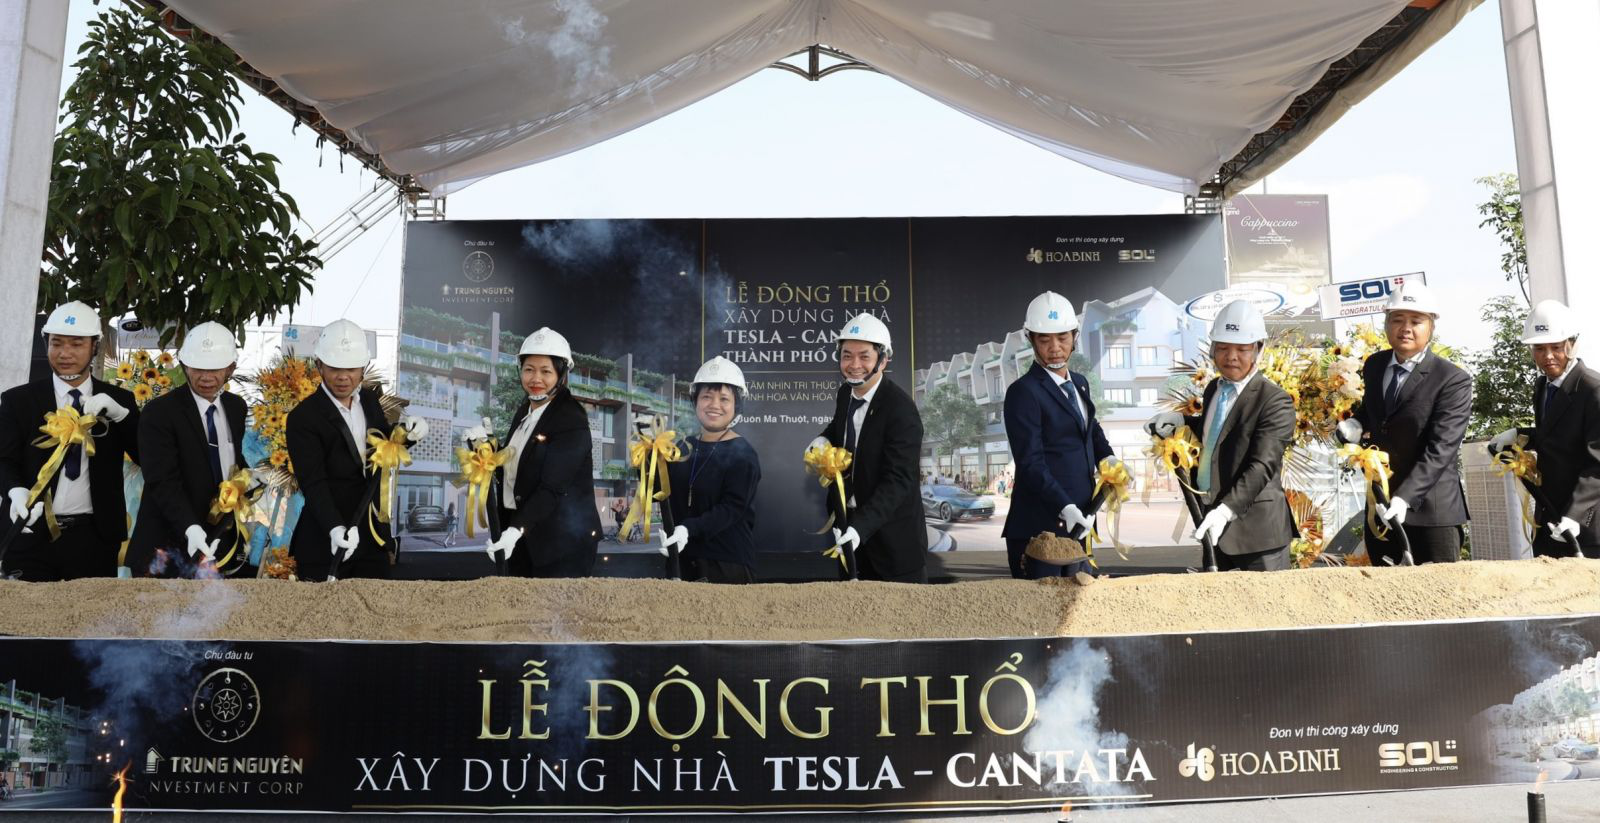 Trung Nguyên Legend và các đối tác thự hiện Lễ động thổ xây dựng nhà Tesla - Cantata